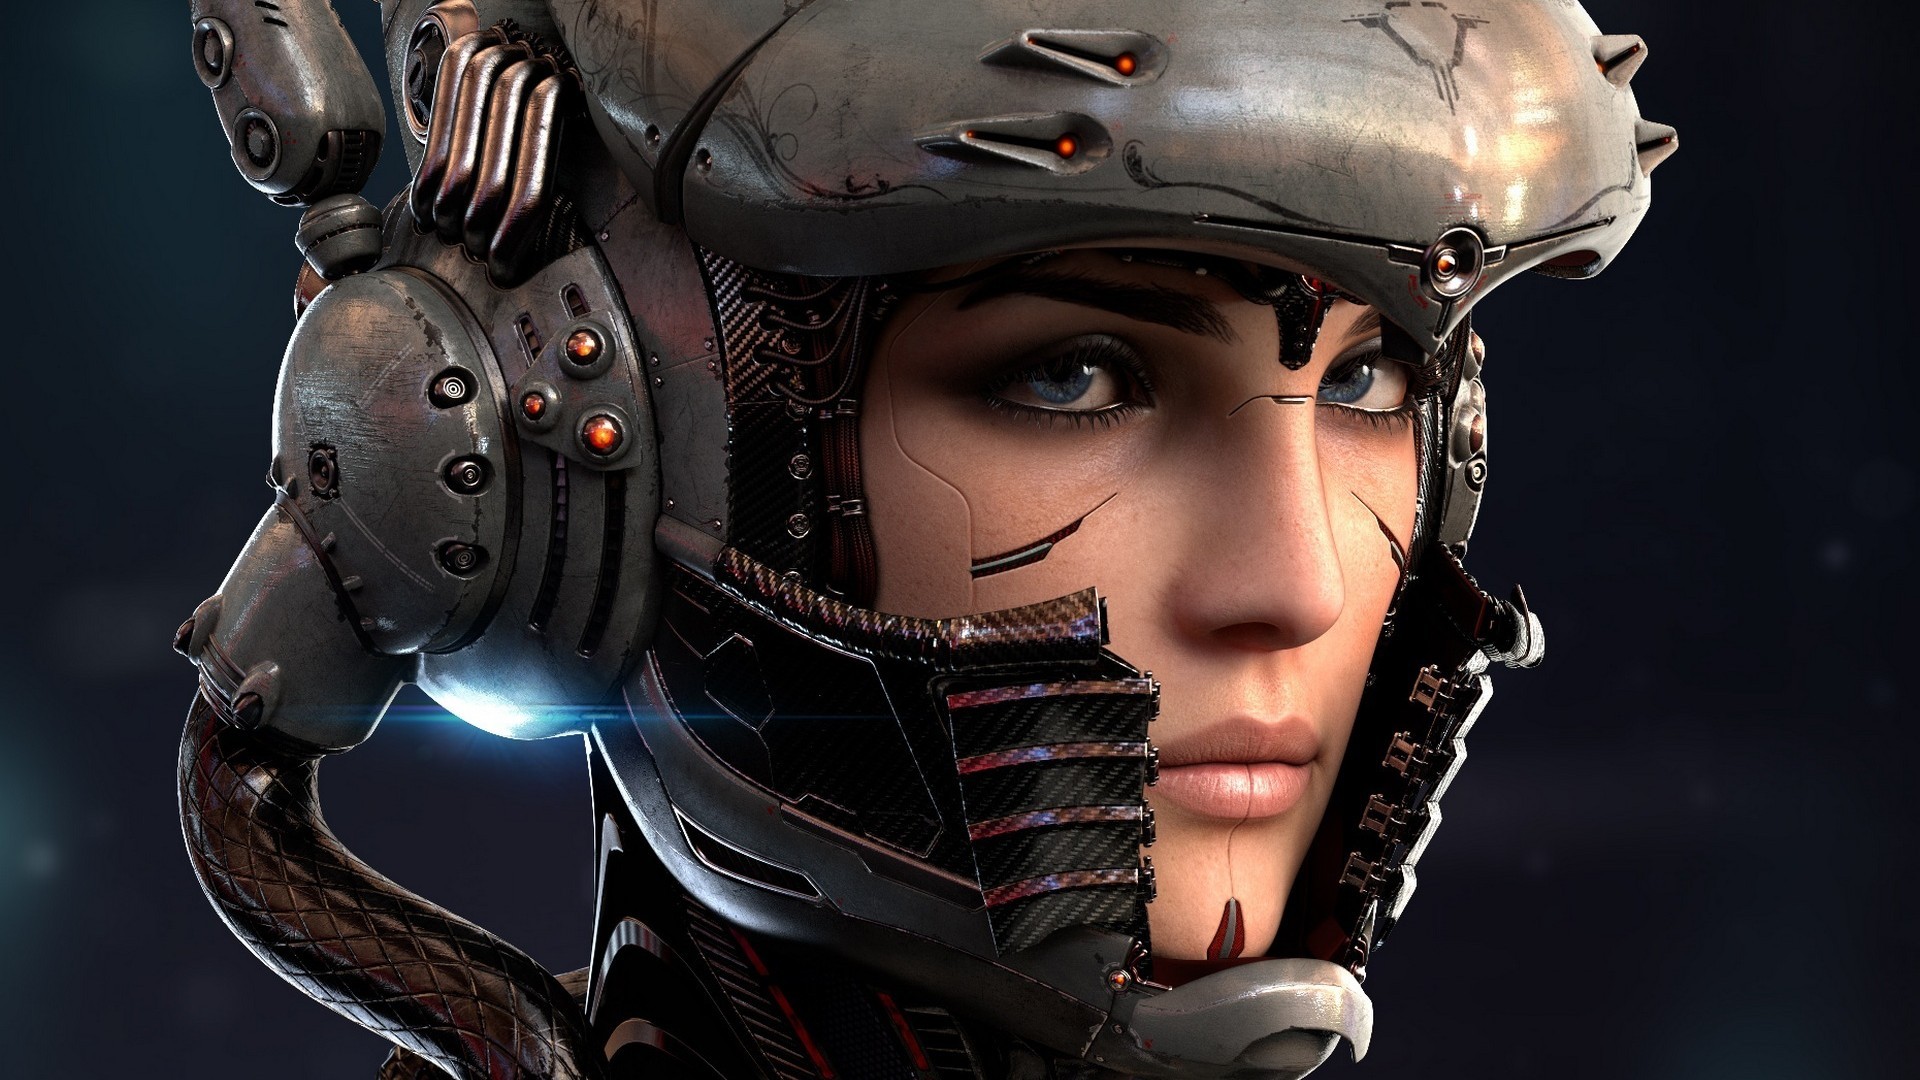 Digital Art Robot Women Face Blue Eyes Cyborg Technology Helmet Wires Lights Bionics 1920x1080